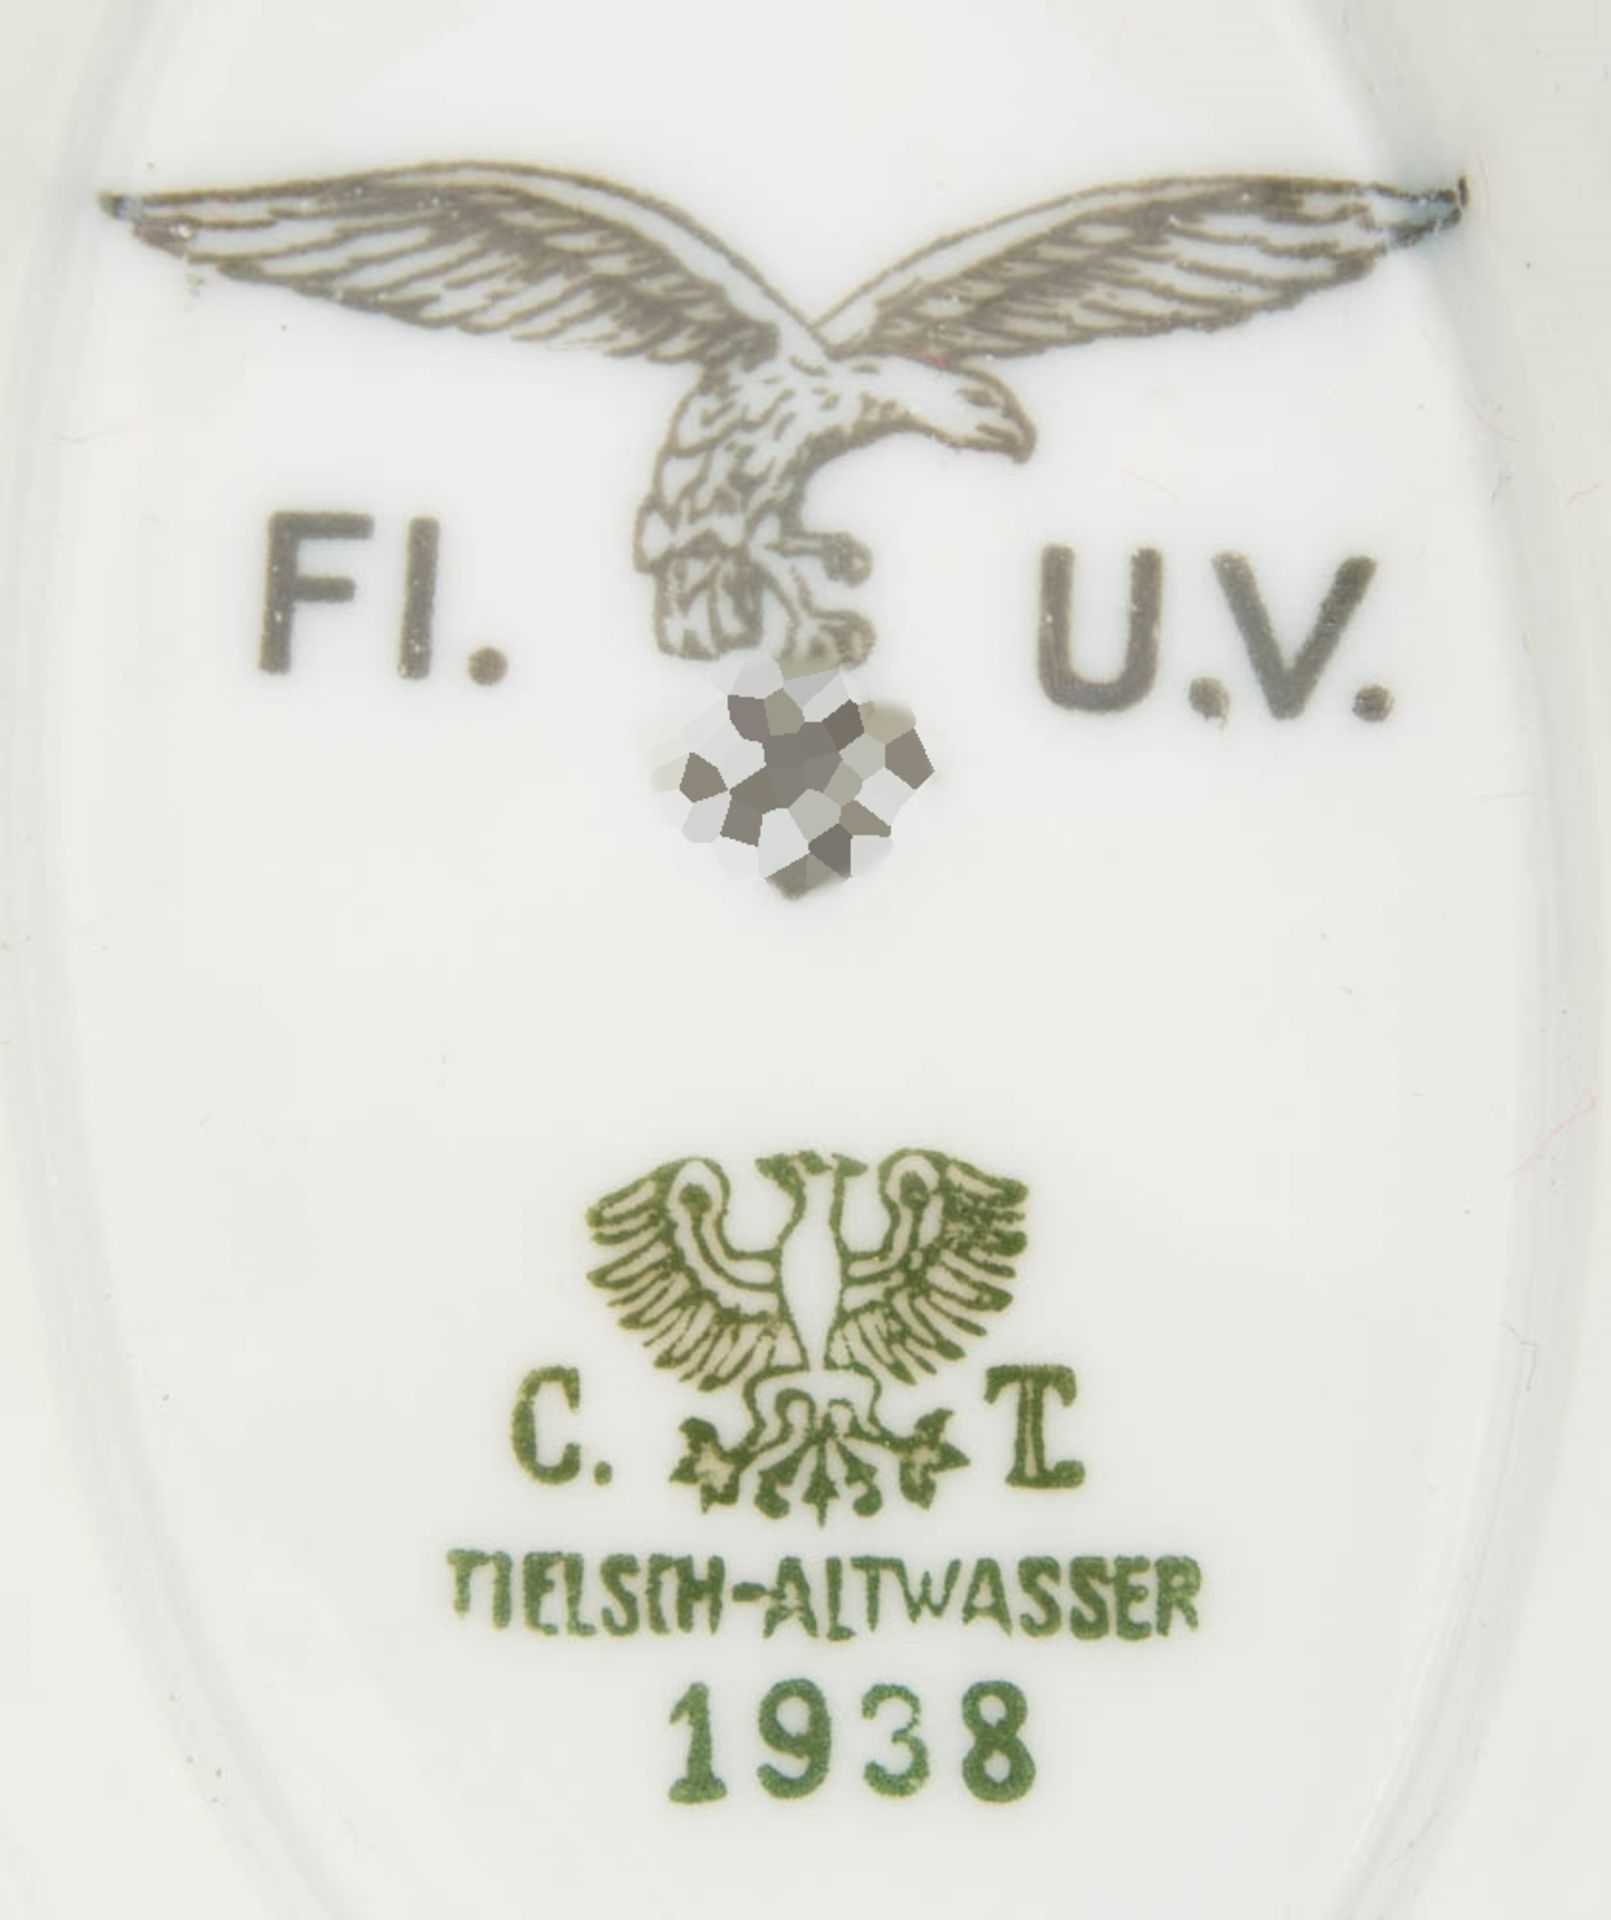 Kantinengeschirr, Sauciere der Luftwaffe, FI.U.V., Tielsch- Altwasser 1938. - Bild 2 aus 3